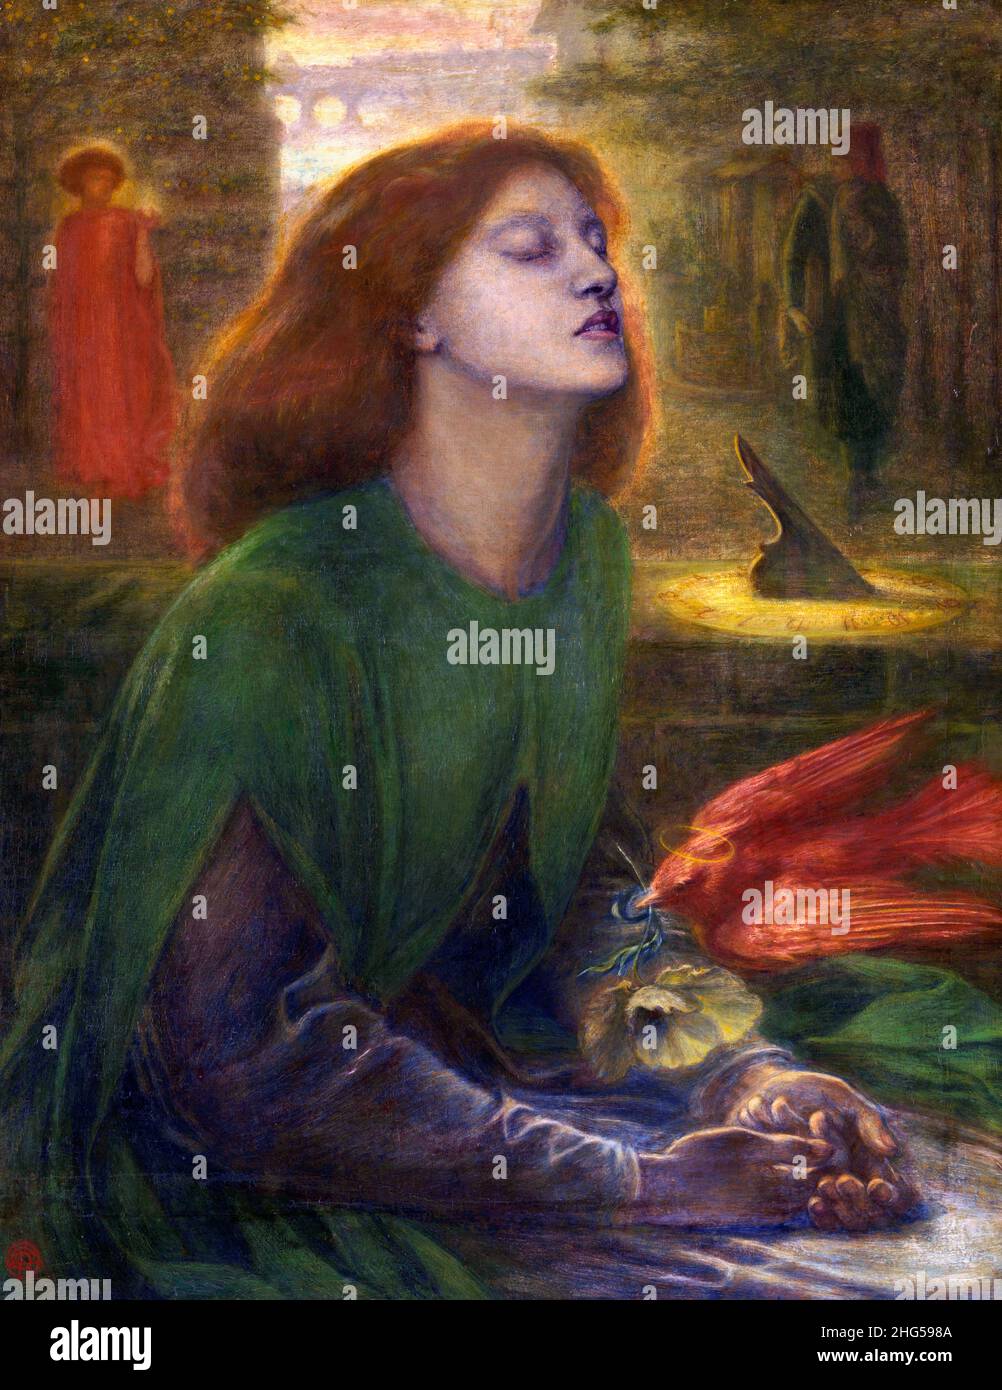 Beata Beatrix de Gabriel Dante Rossetti (1828-1882), huile sur toile, 1864 Banque D'Images